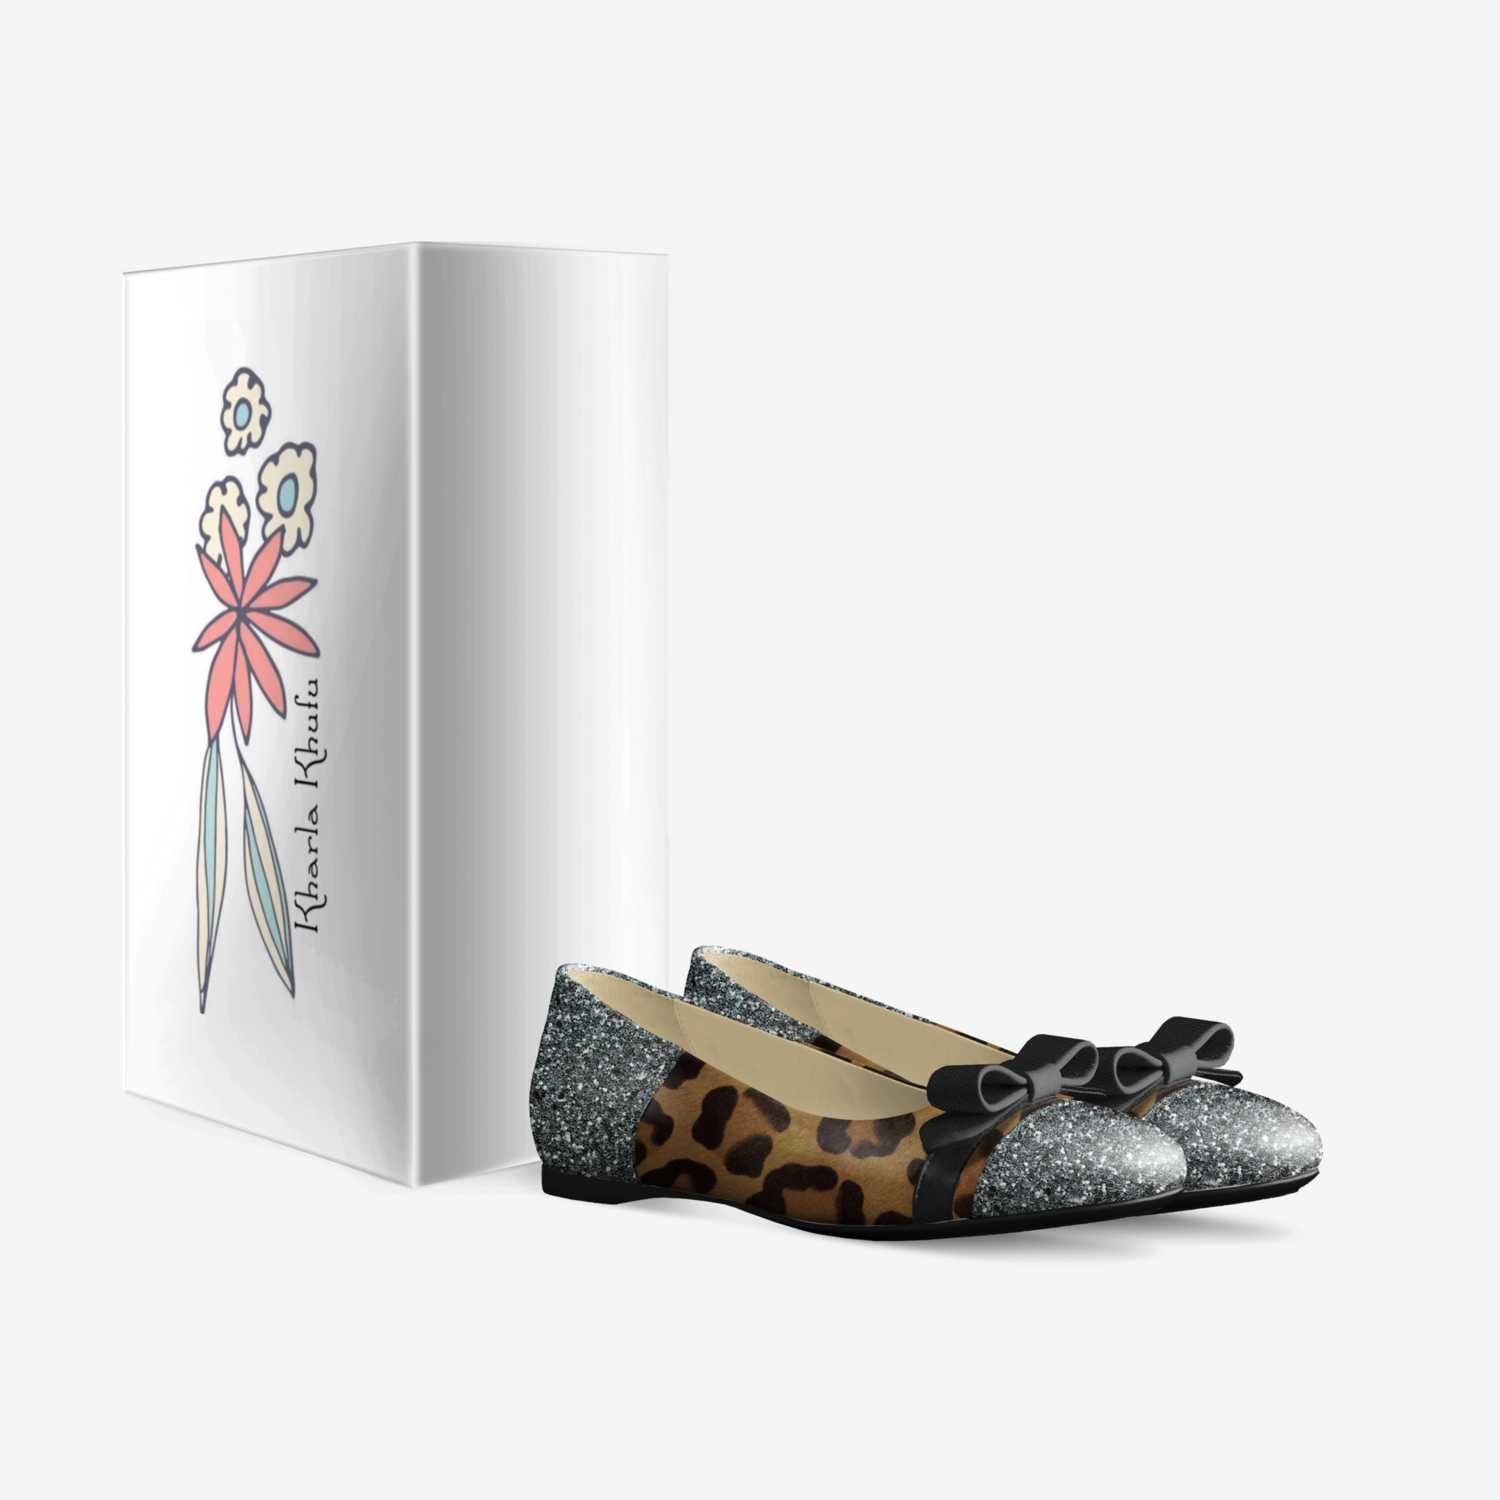 Kharla Khufu custom made in Italy shoes by Sebren Khufu | Box view